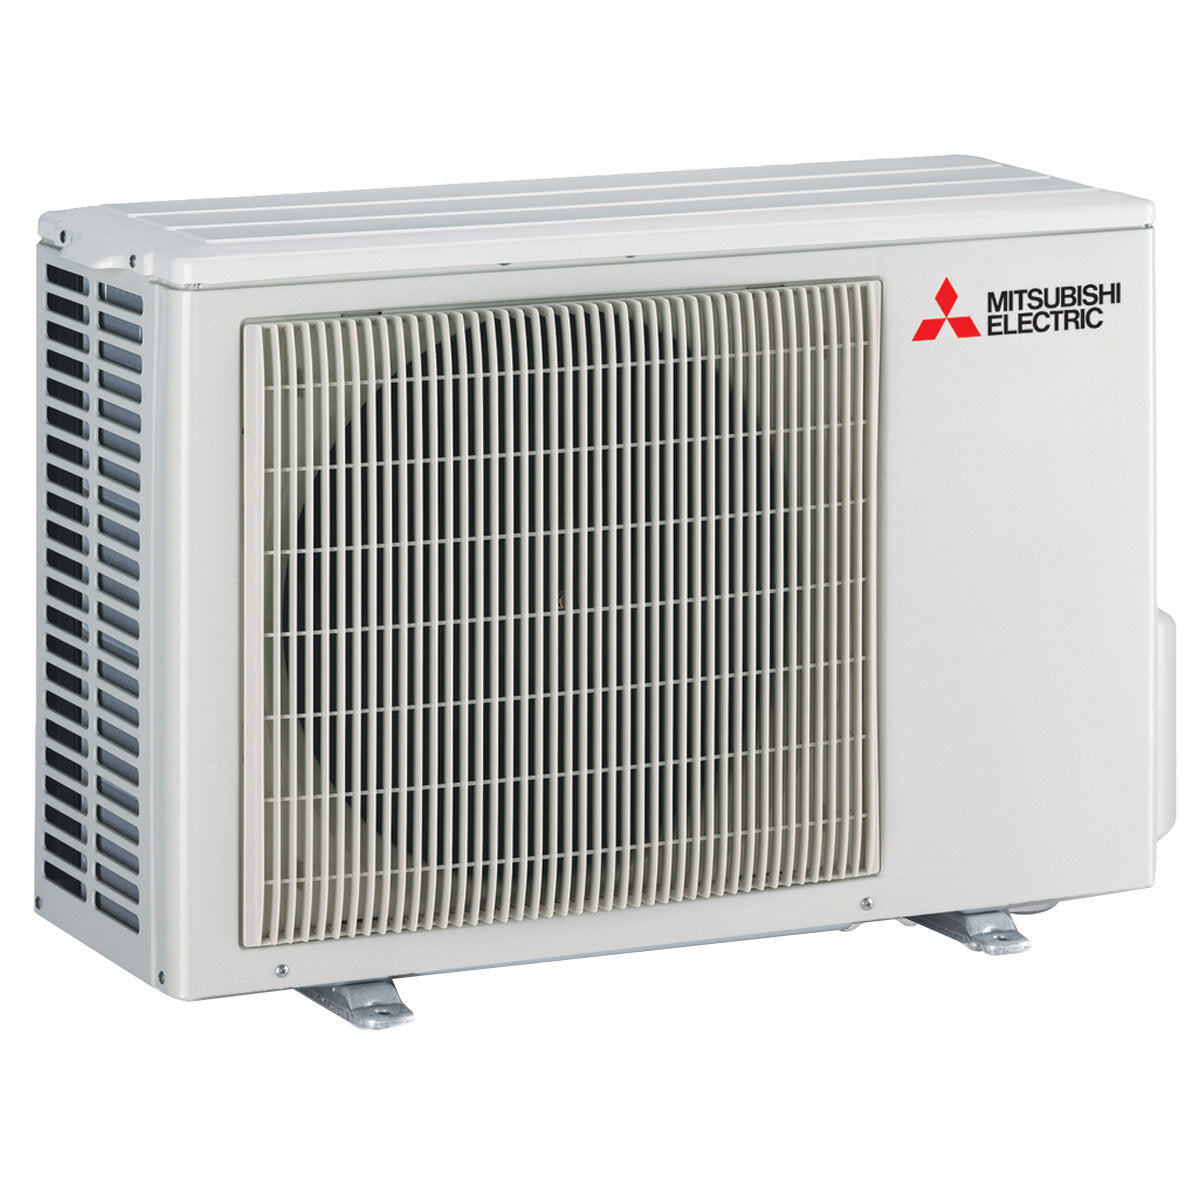 Mitsubishi Electric Klimaanlage AY-Serie Dual Split 9000+12000 BTU Inverter A++ WLAN-Außeneinheit 5,3 kW